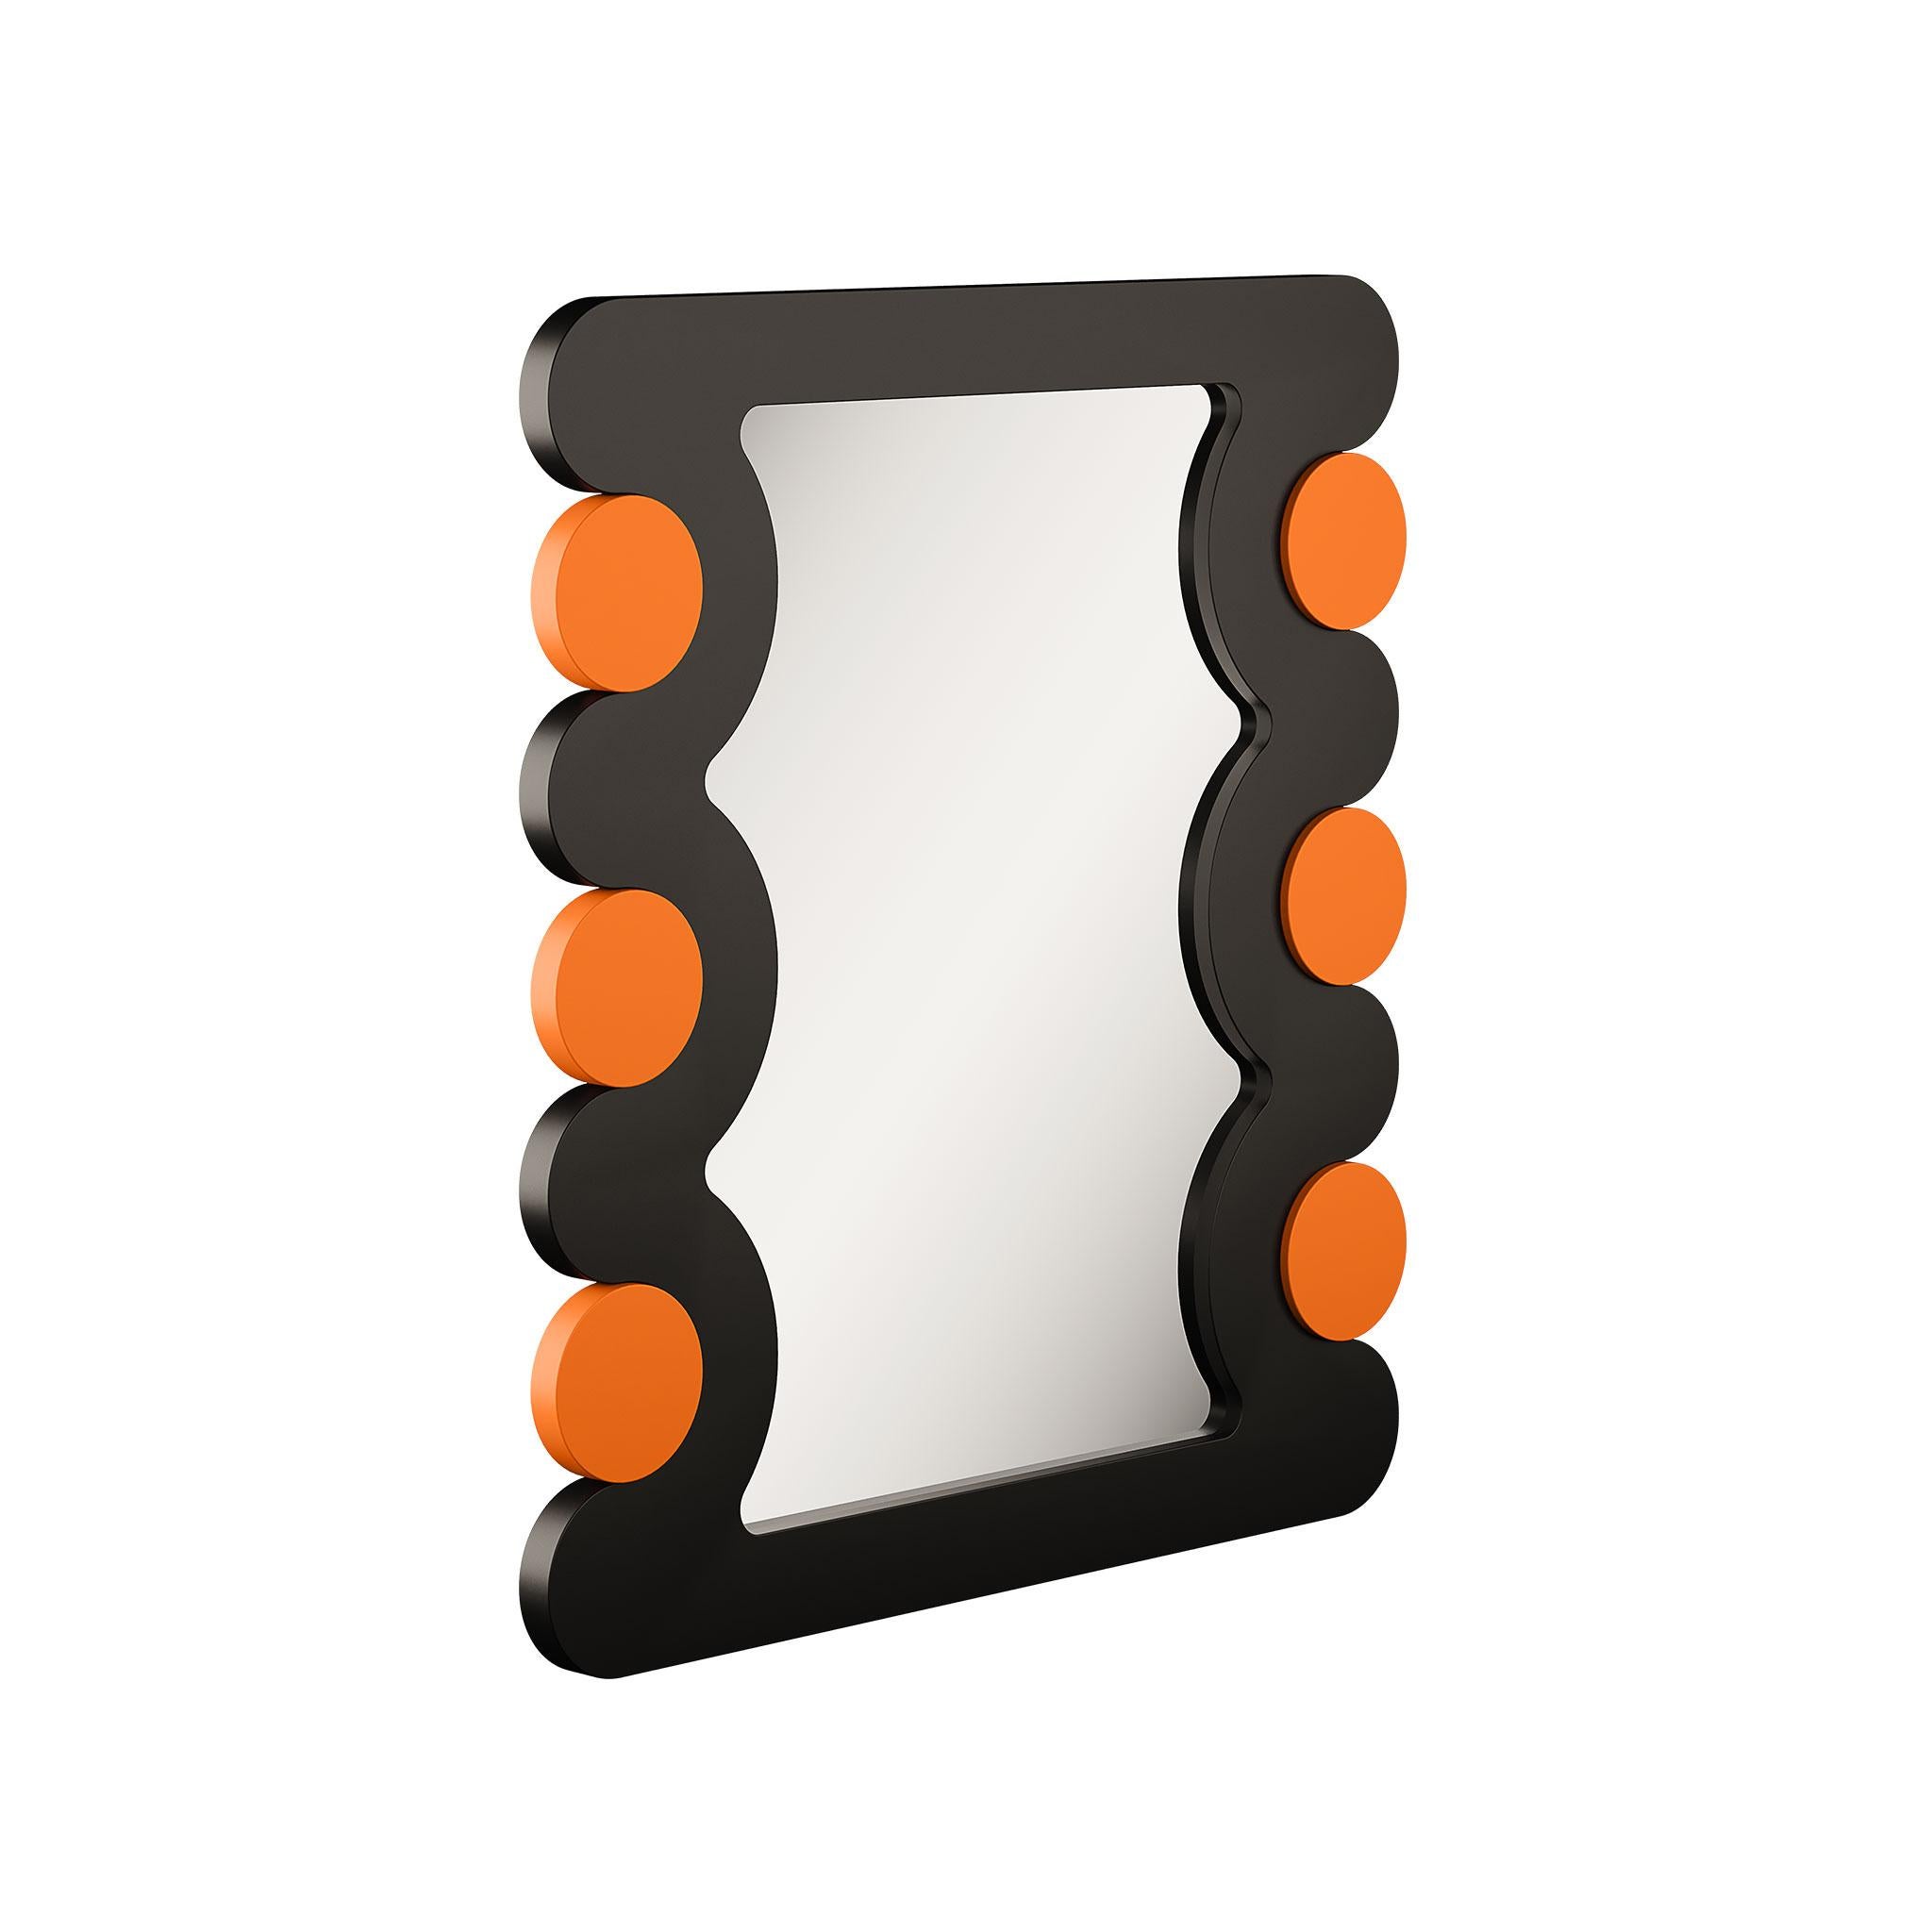 Élevez l'esthétique de votre espace avec notre Miroir contemporain en bois laqué, dans des teintes orange et noires vibrantes, méticuleusement sculpté et fabriqué à la main. Ce miroir n'est pas seulement un objet fonctionnel, mais une expression